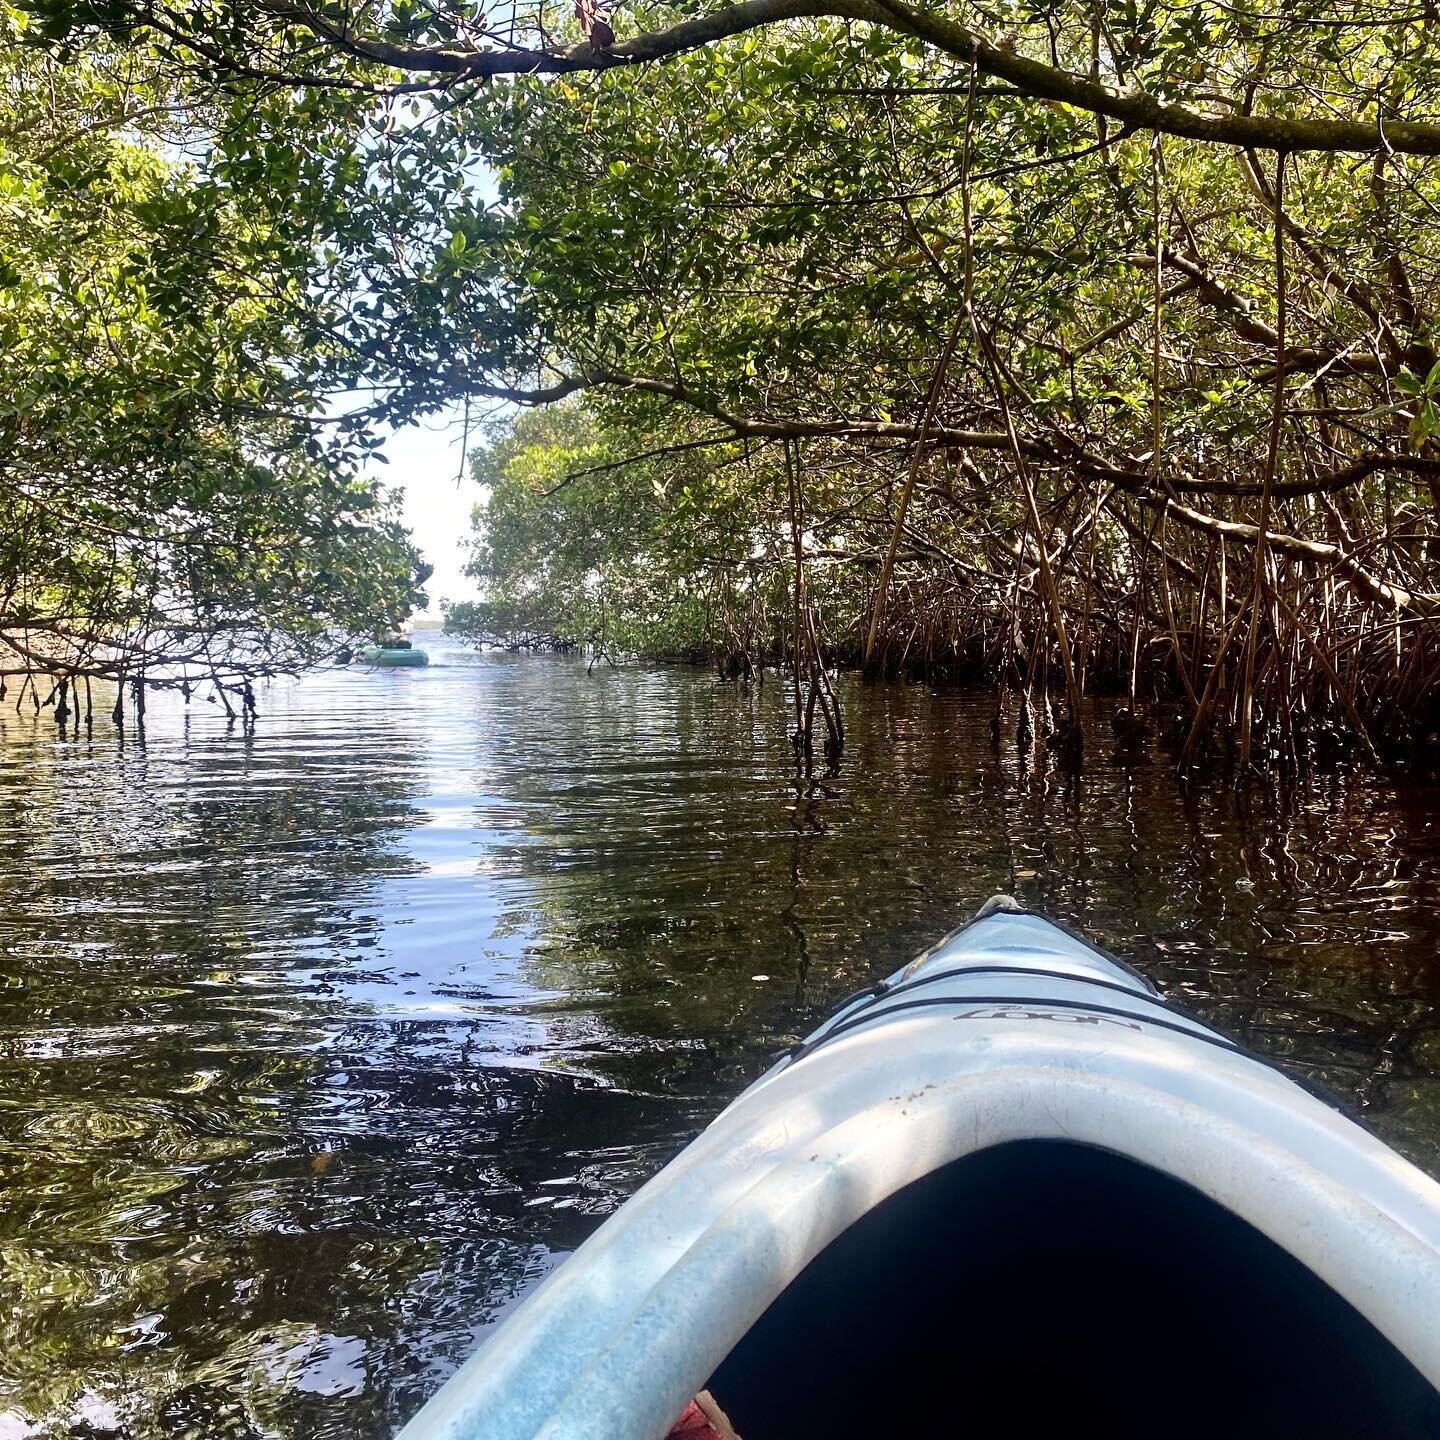 Kayaking the #mangroves in #Tarponbay with @tarponbayexplorers in #Sanibel! Saw #manatees, a swimming #iguana and lots of good #flyfishing!
.
#kayakfishing #kayakingadventures #floridagulfcoast #kayaking #outdoorfun #travel #travelwriting